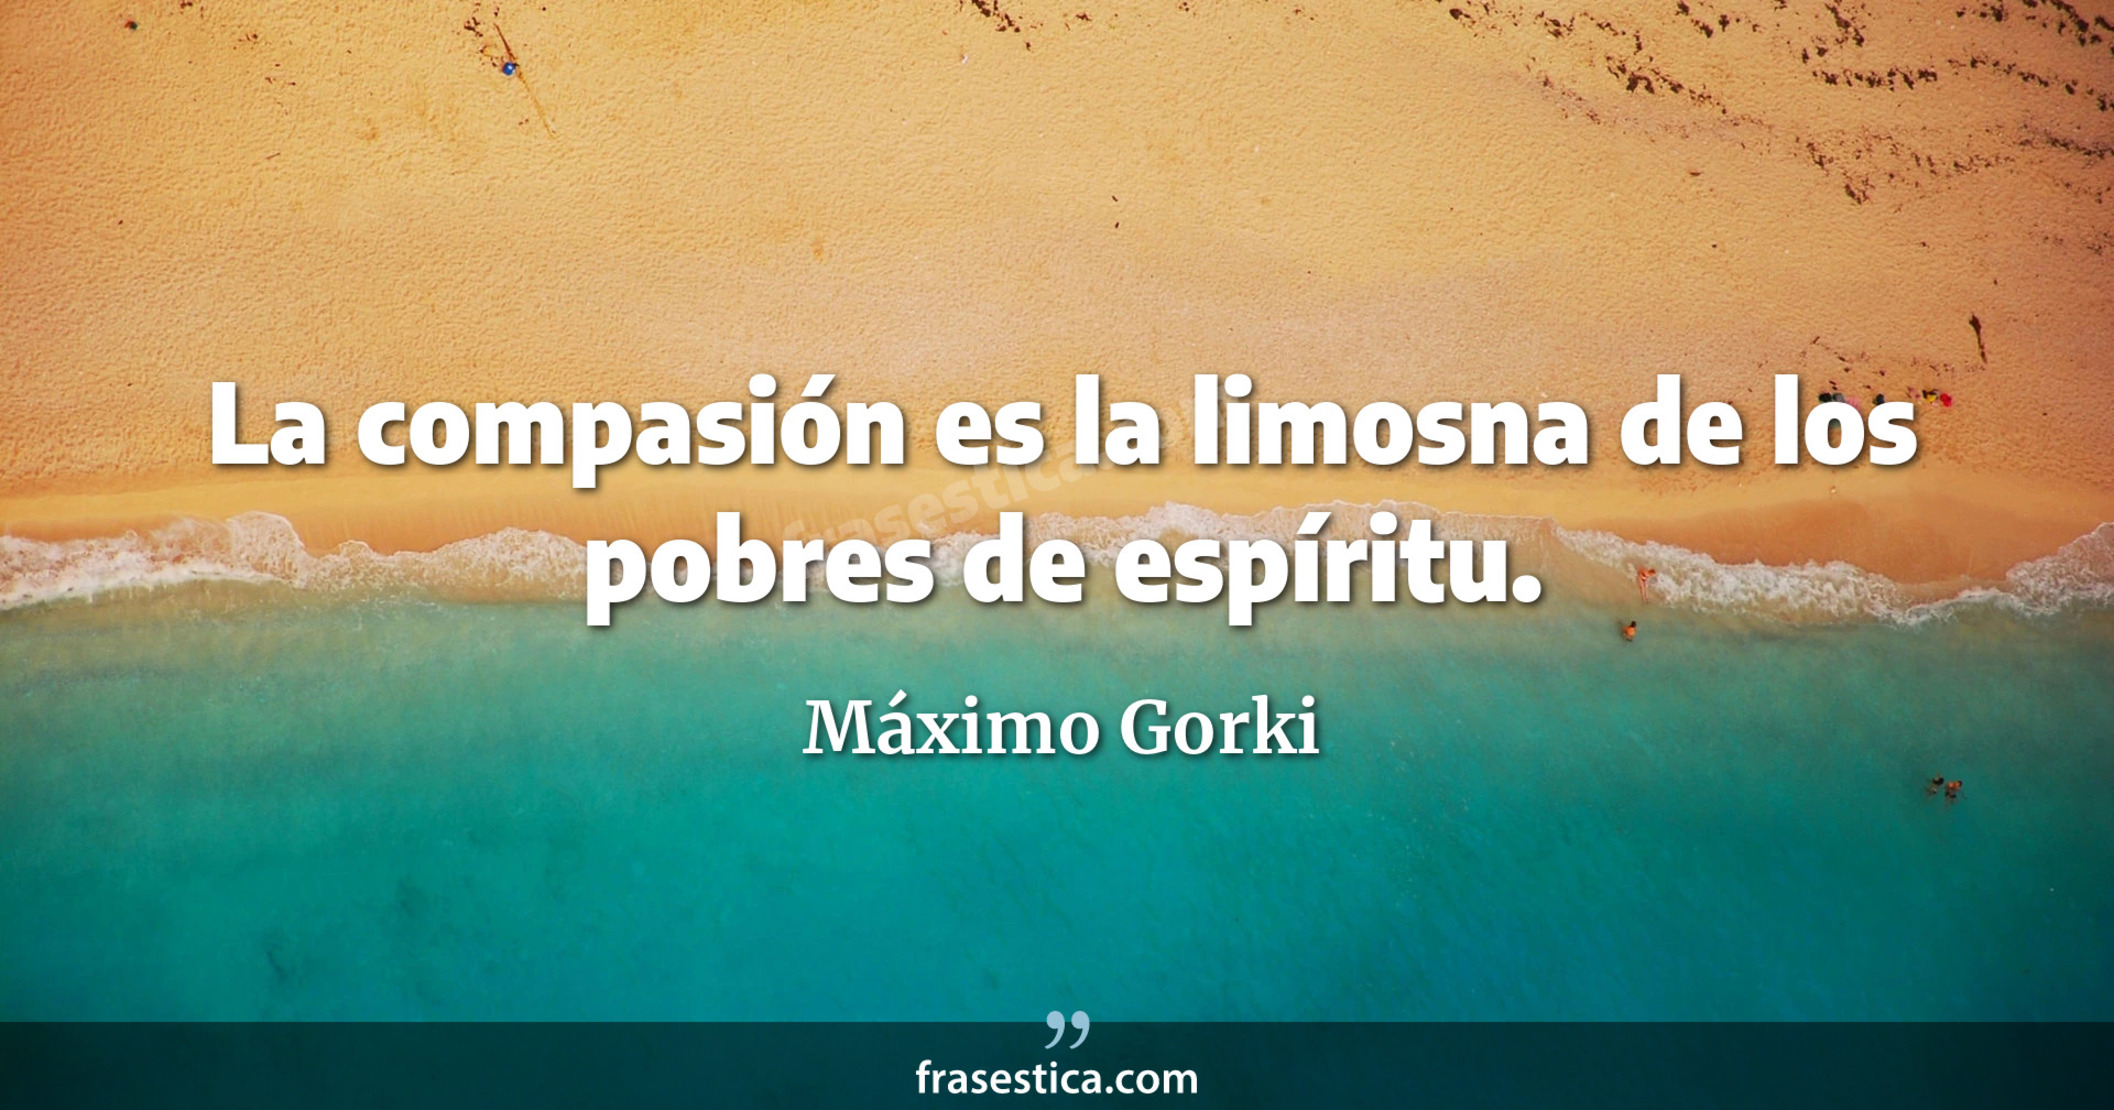 La compasión es la limosna de los pobres de espíritu. - Máximo Gorki